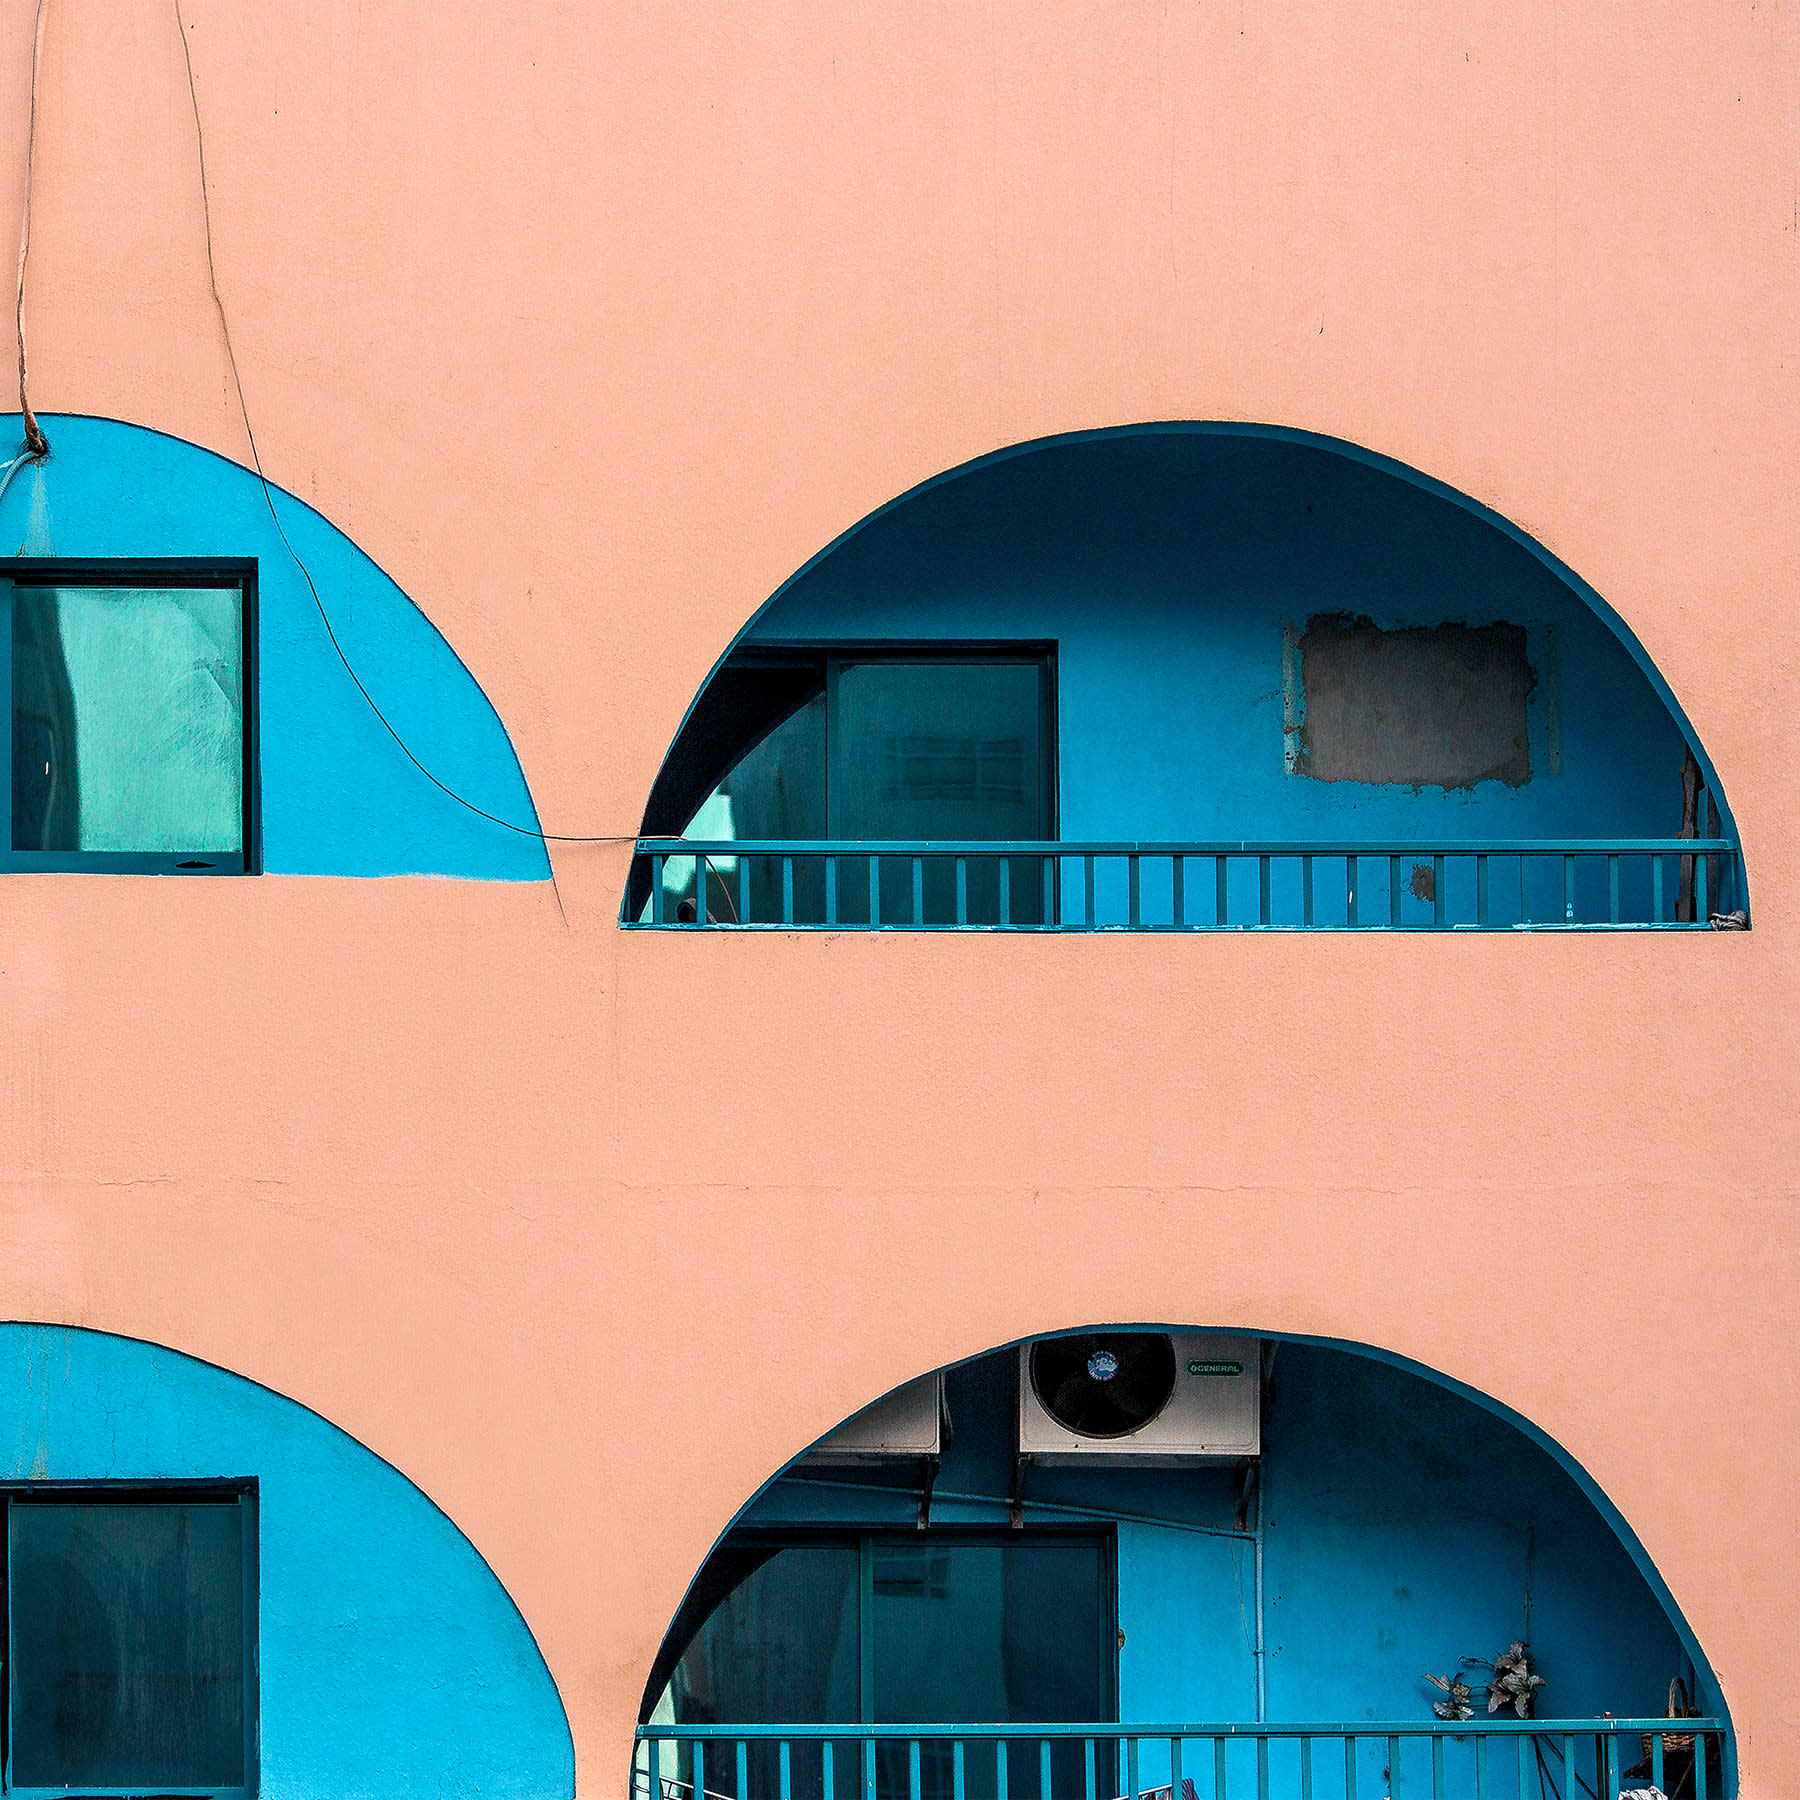 صور تكشف الجمال المعماري لمباني مزينة بوحدات تكييف في الإمارات